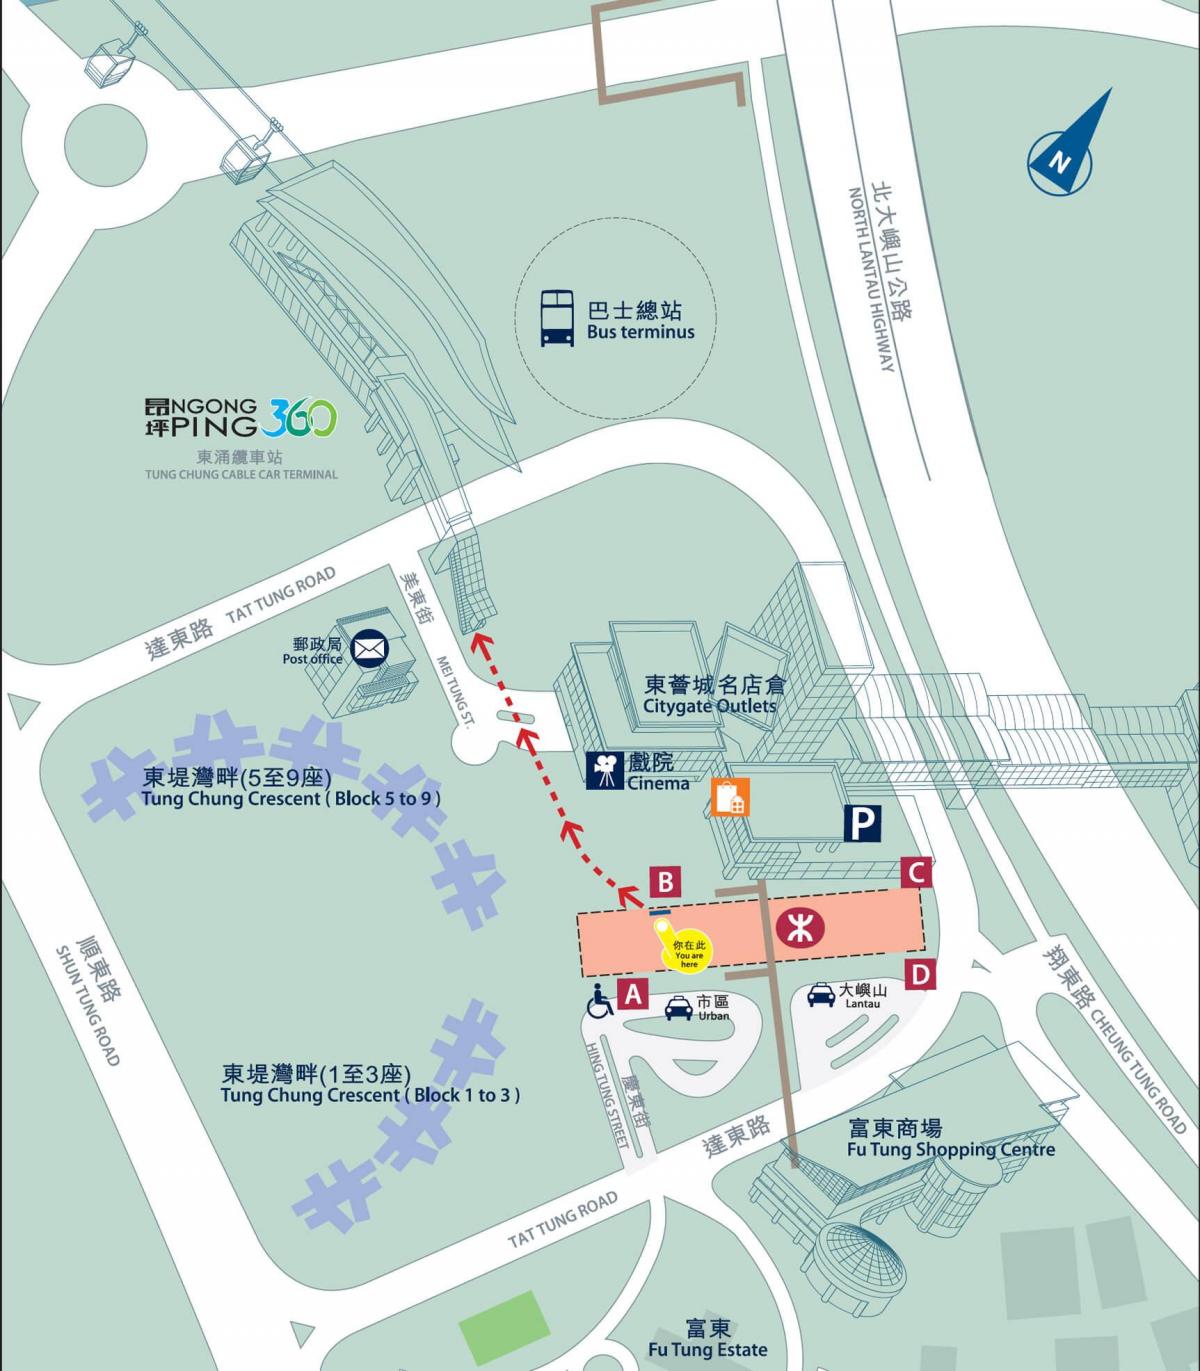 તુંગ ચુંગ વાક્ય MTR નકશો